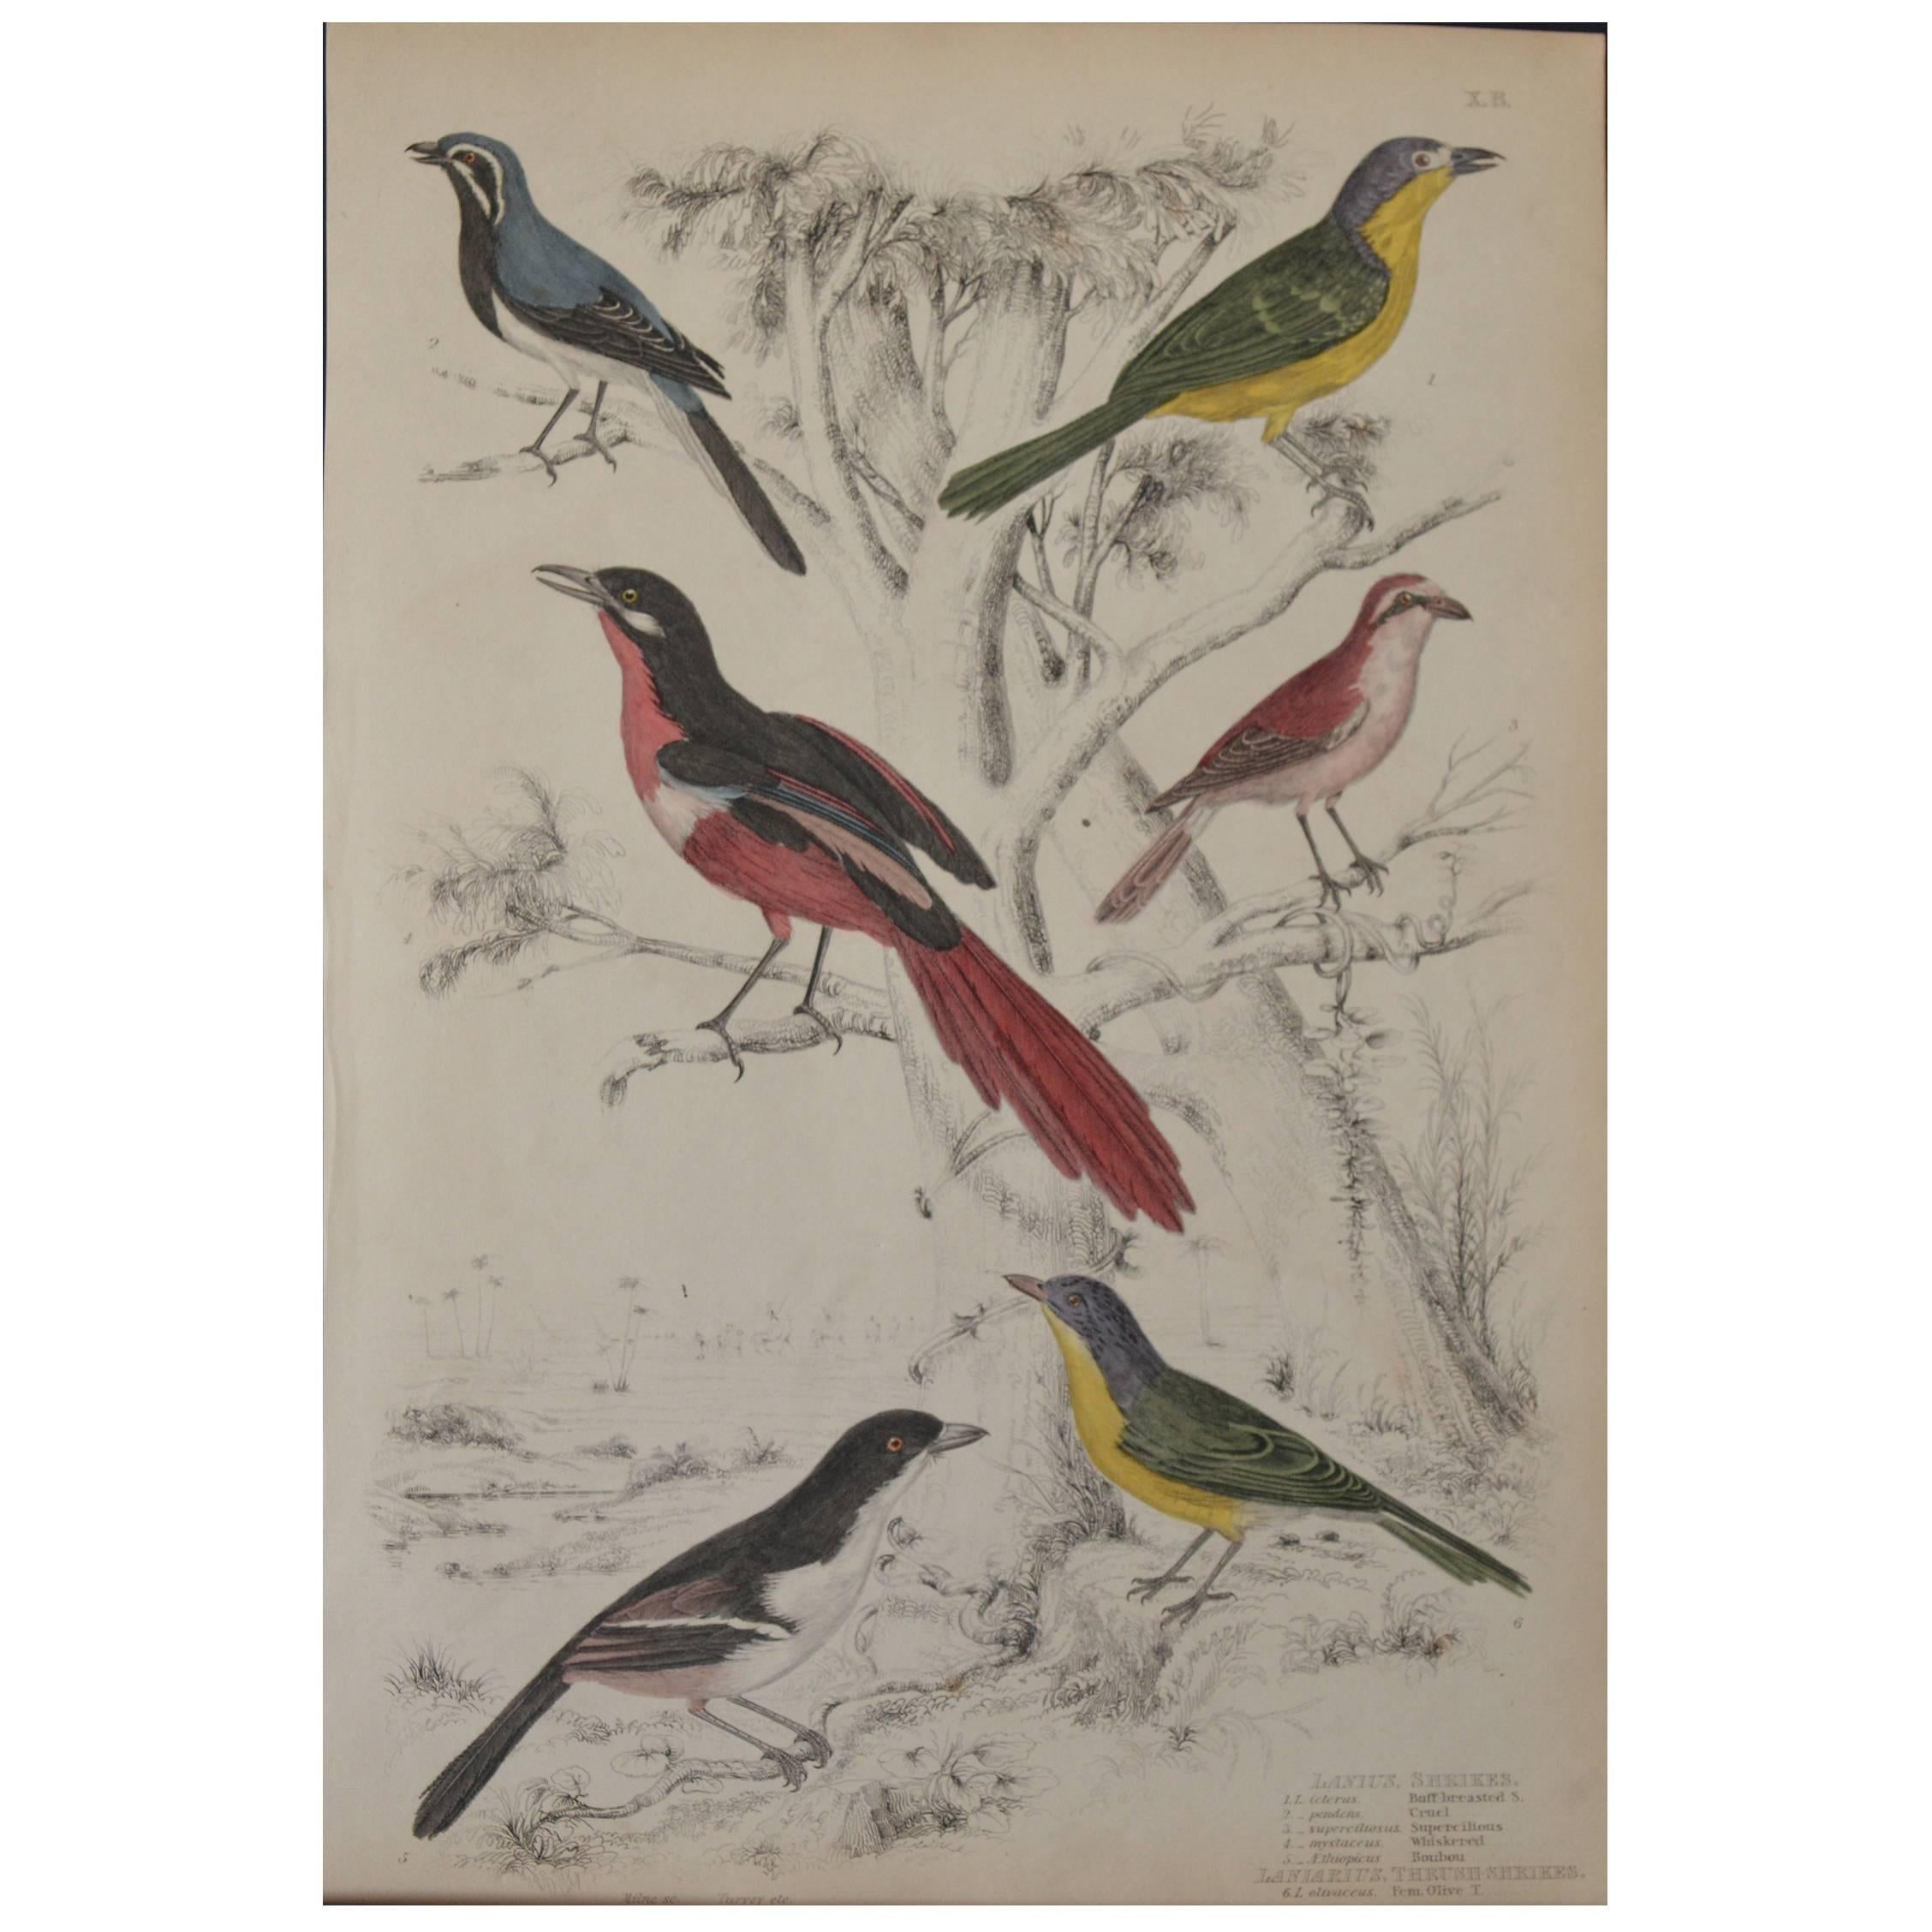 Original Antique Print of Exotic Birds "Shrikes", circa 1830, Folio